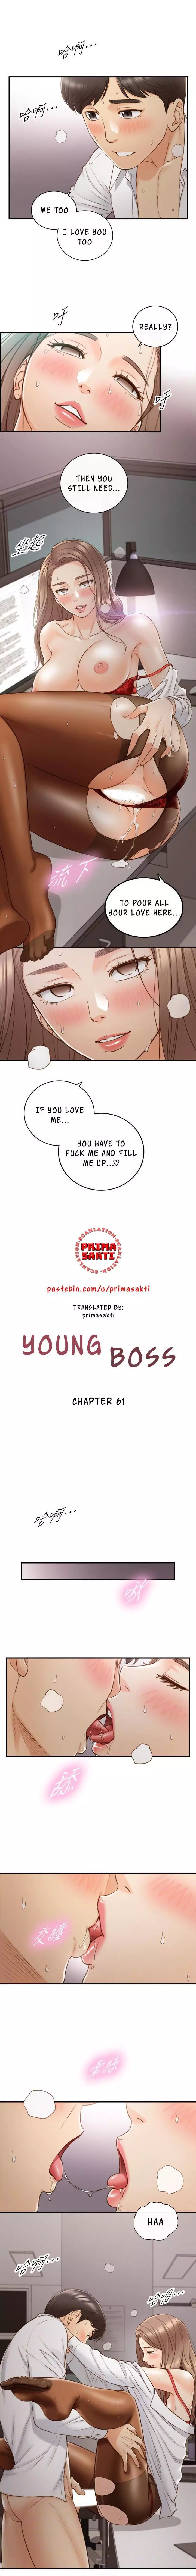 Young Boss Manhwa 01-73 482ページ